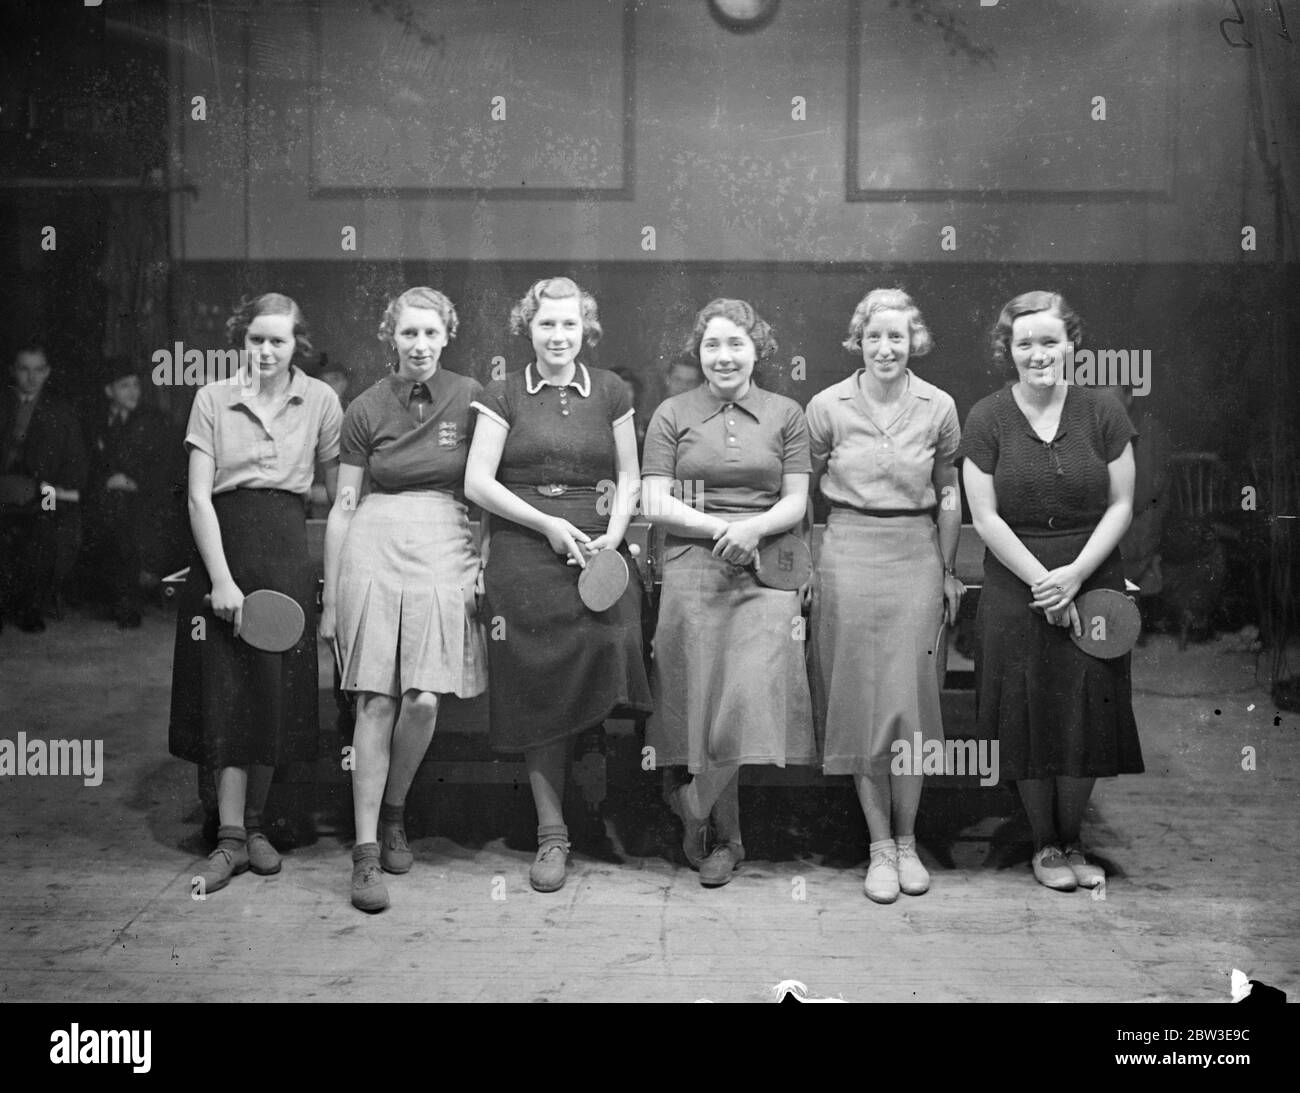 Kämpfen für Plätze in Frauen Tischtennis-Team , um europäische Spiele zu spielen. Von links nach rechts - Miss M Osborne , D M Emdin , W Woodhead , M Berry , C Wheaton , und V Bromfield , die Konkurrenten, die für Plätze in der Frauen Tischtennis-Team gekämpft, um England zu vertreten. 20. Januar 1935 Stockfoto